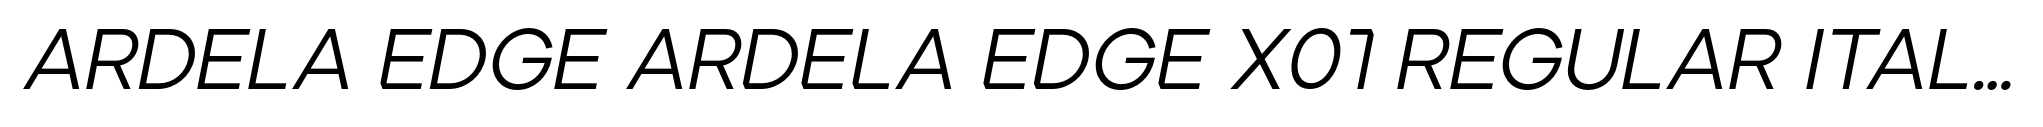 Ardela Edge ARDELA EDGE X01 Regular Italic image